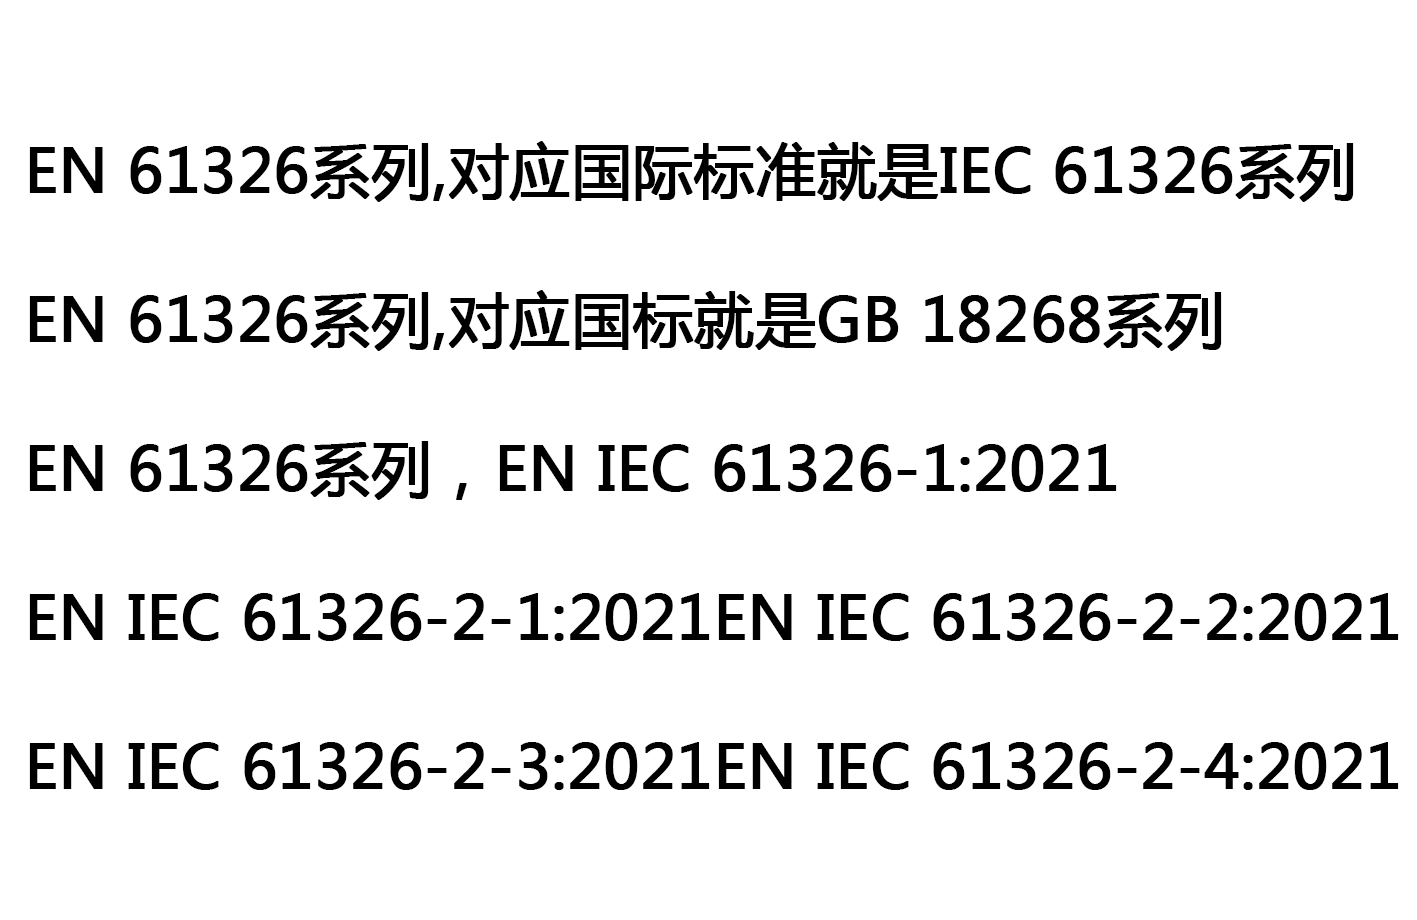 IEC EN 61326 series